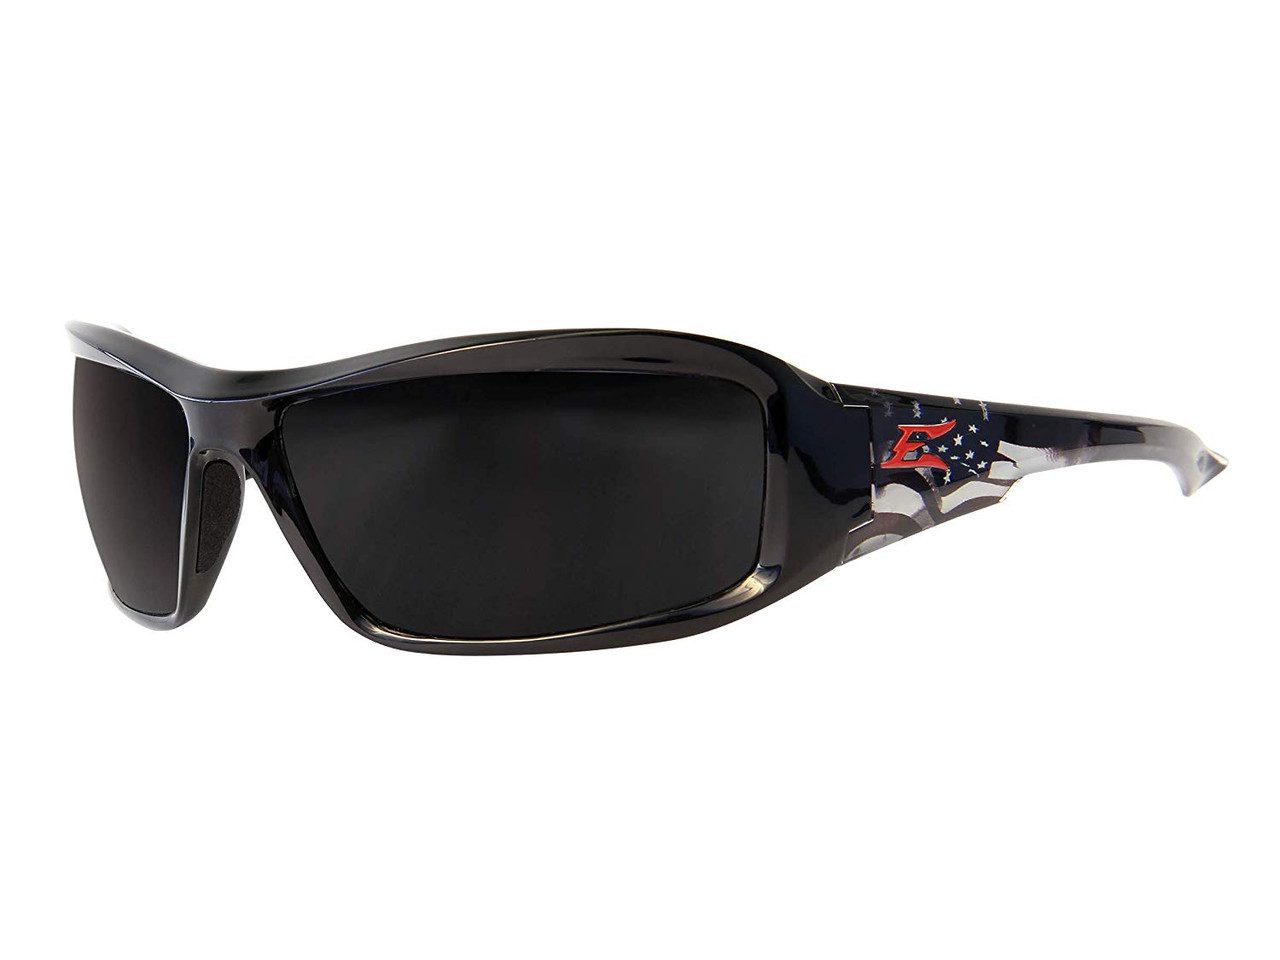 Black wit Product Details Edge Eyewear TSMAP218 Dakura Polarized Safety Glasses 